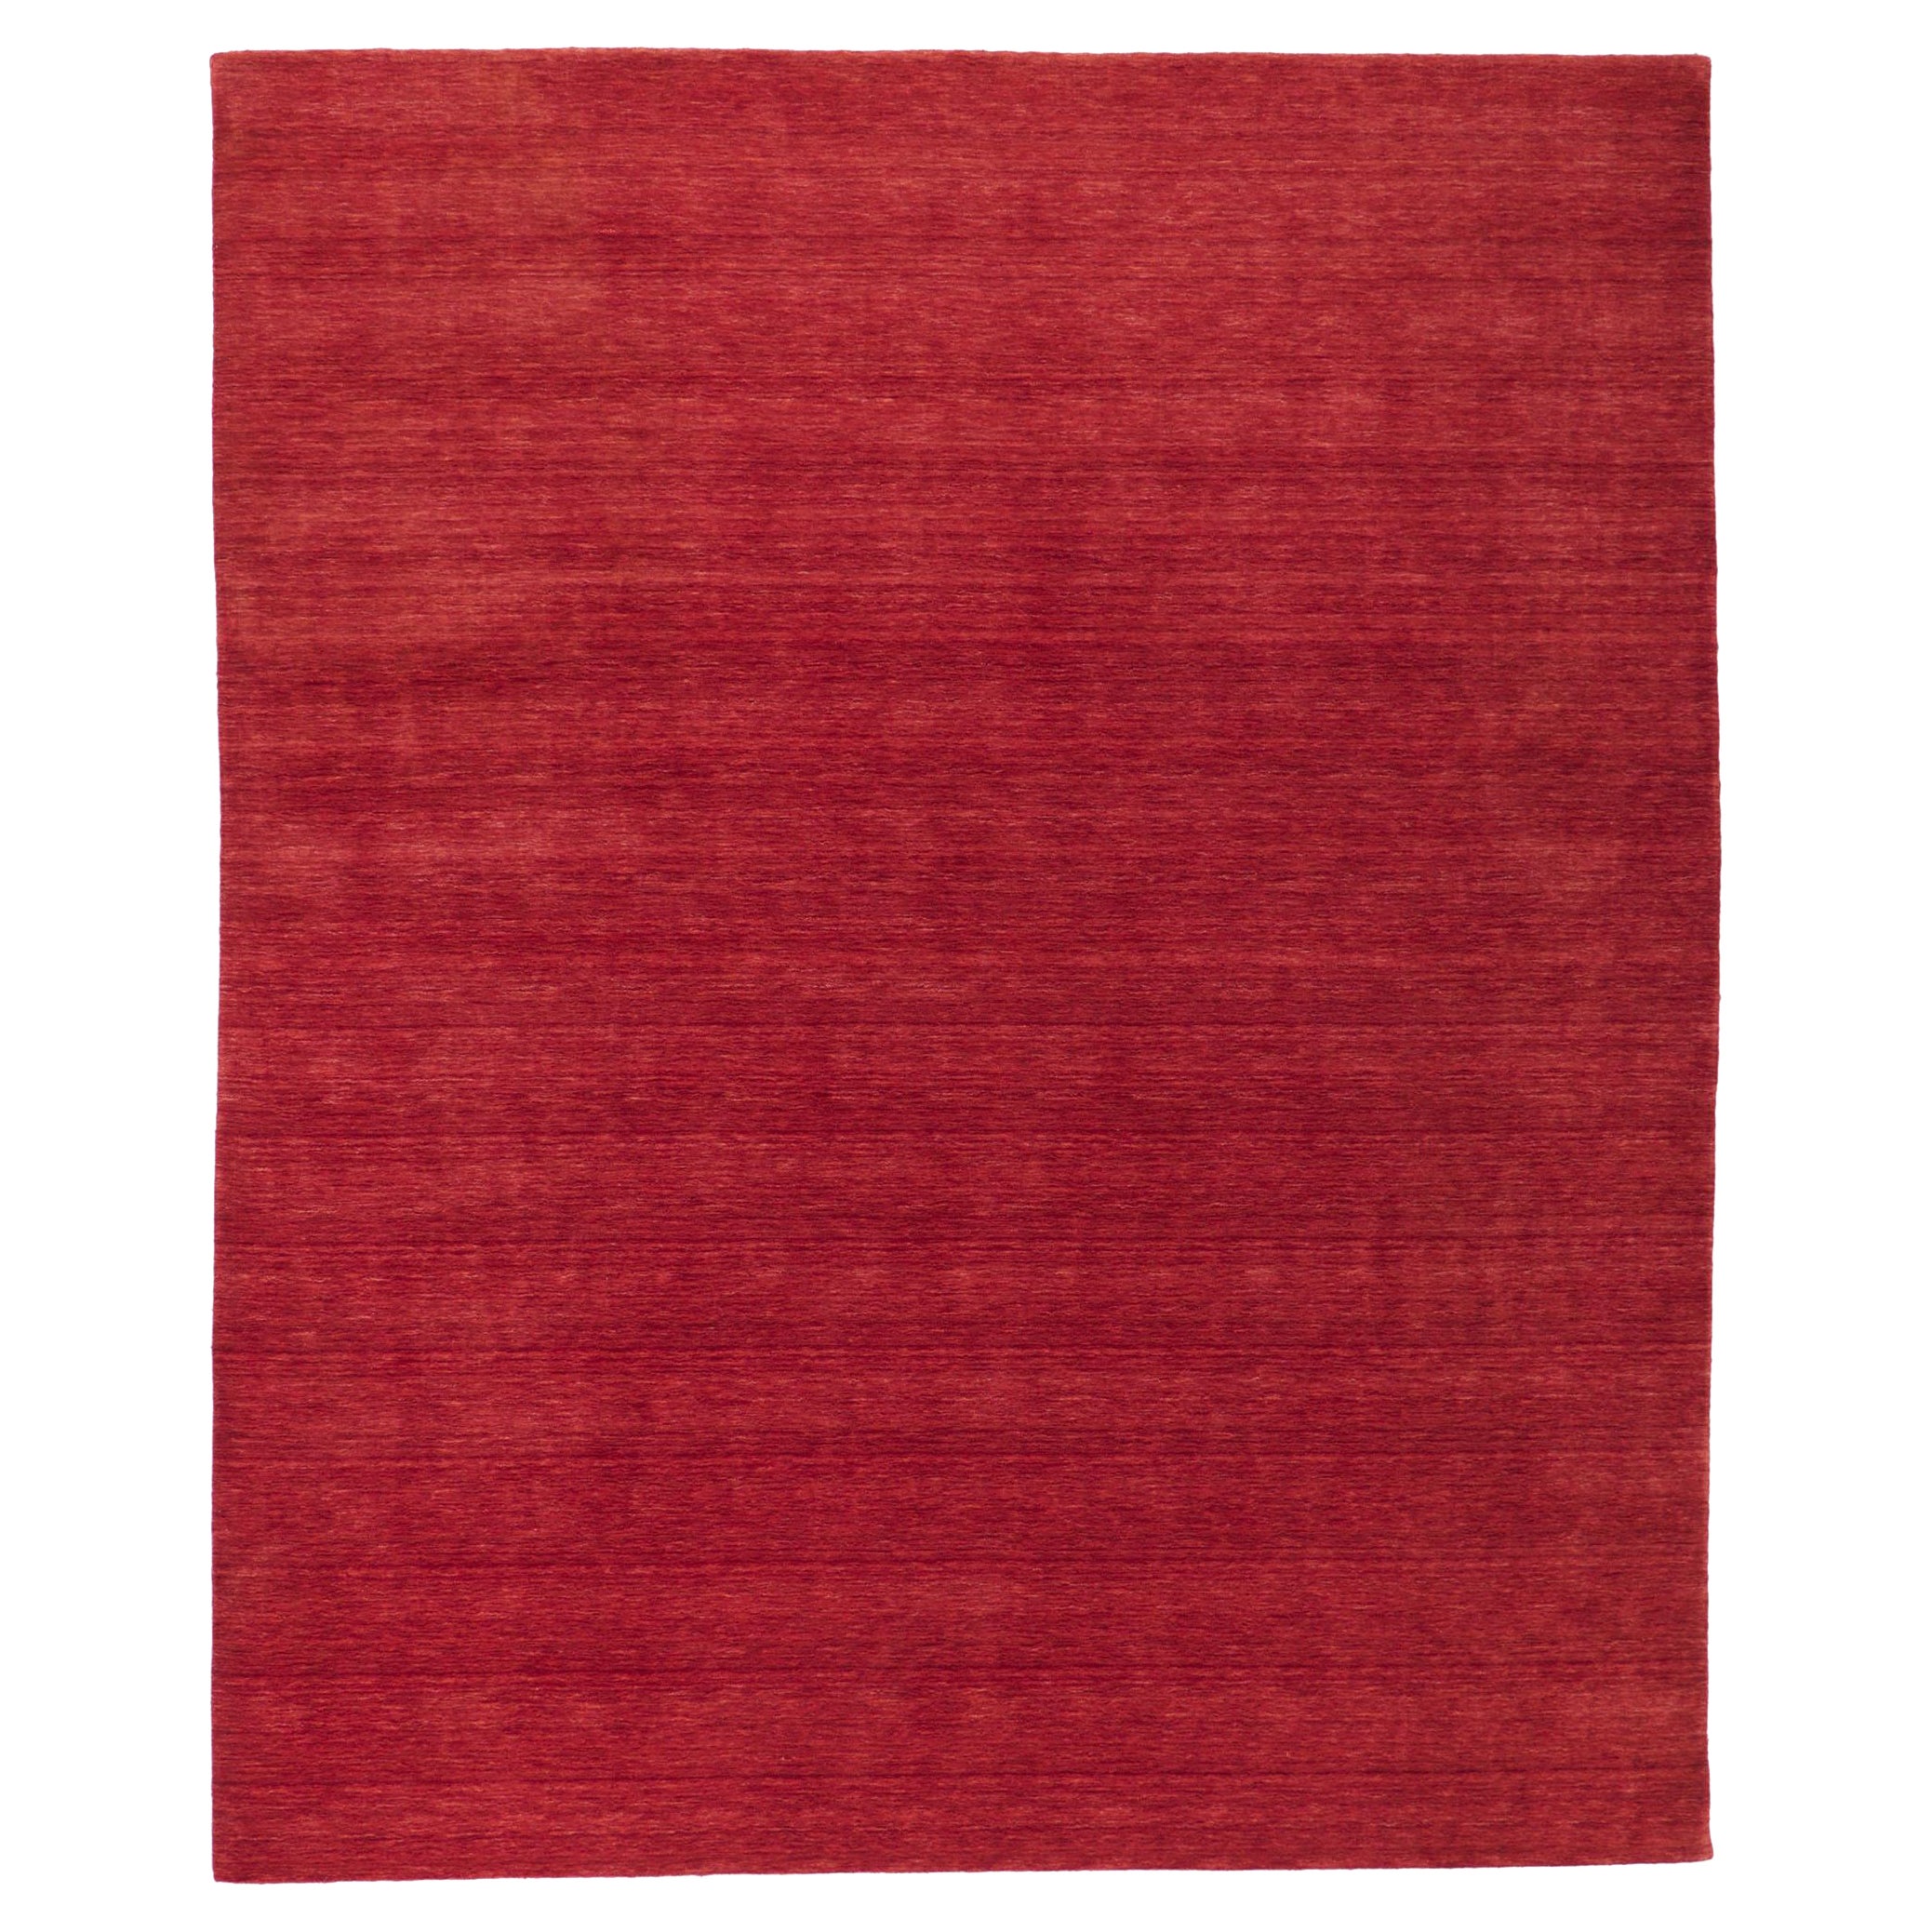 Nouveau tapis rouge contemporain de style moderne